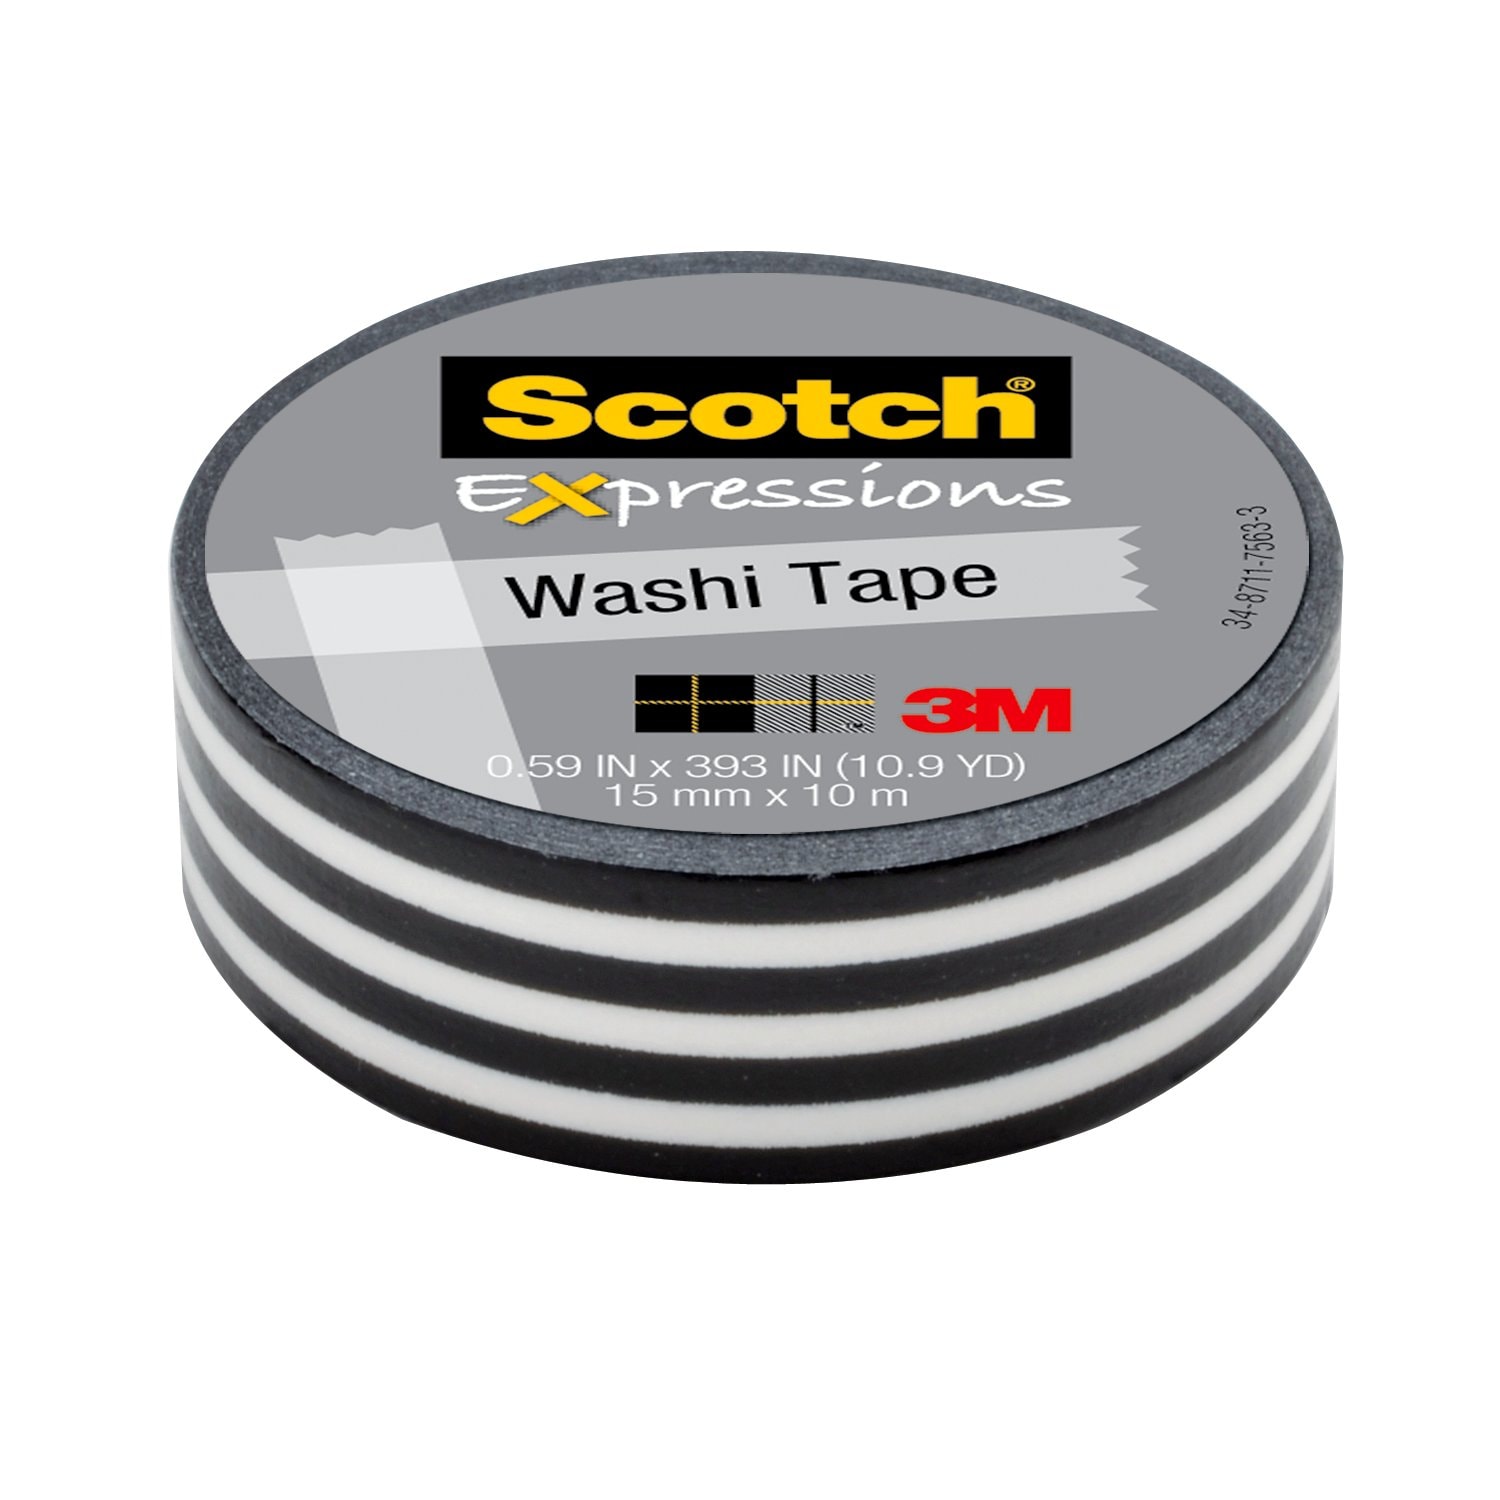 7100024393 - Scotch Expressions Washi Tape C314-P43, .59 in x 393 in (15 mm x 10 m)
Black Stripe